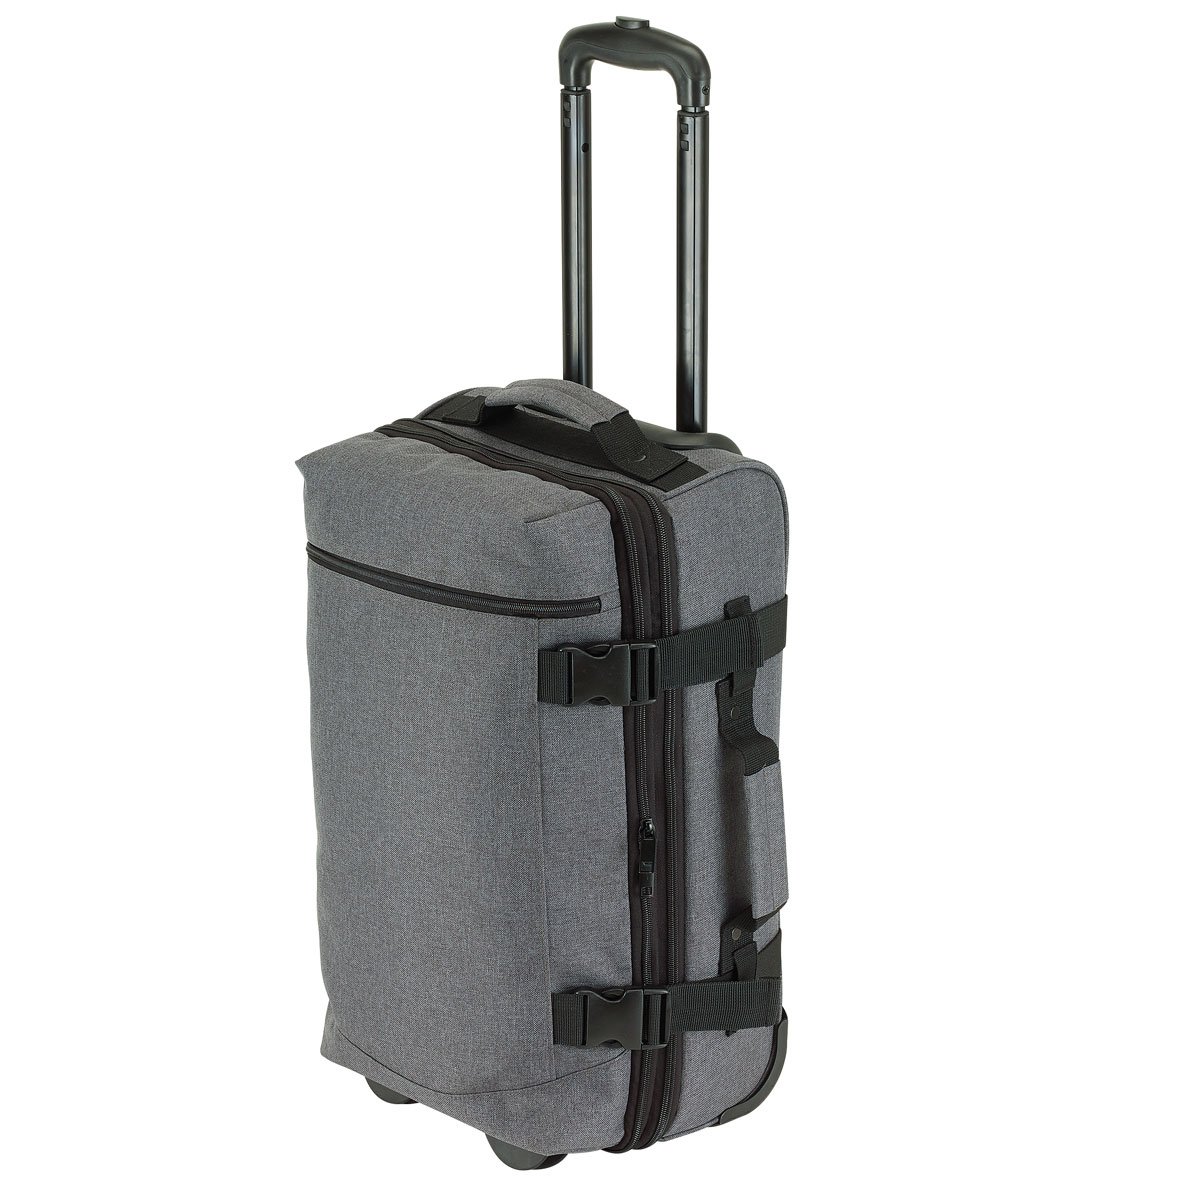 XXL Trolleytasche Reisetasche Sporttasche Reise Trolley Tasche Koffer Travel Bag 